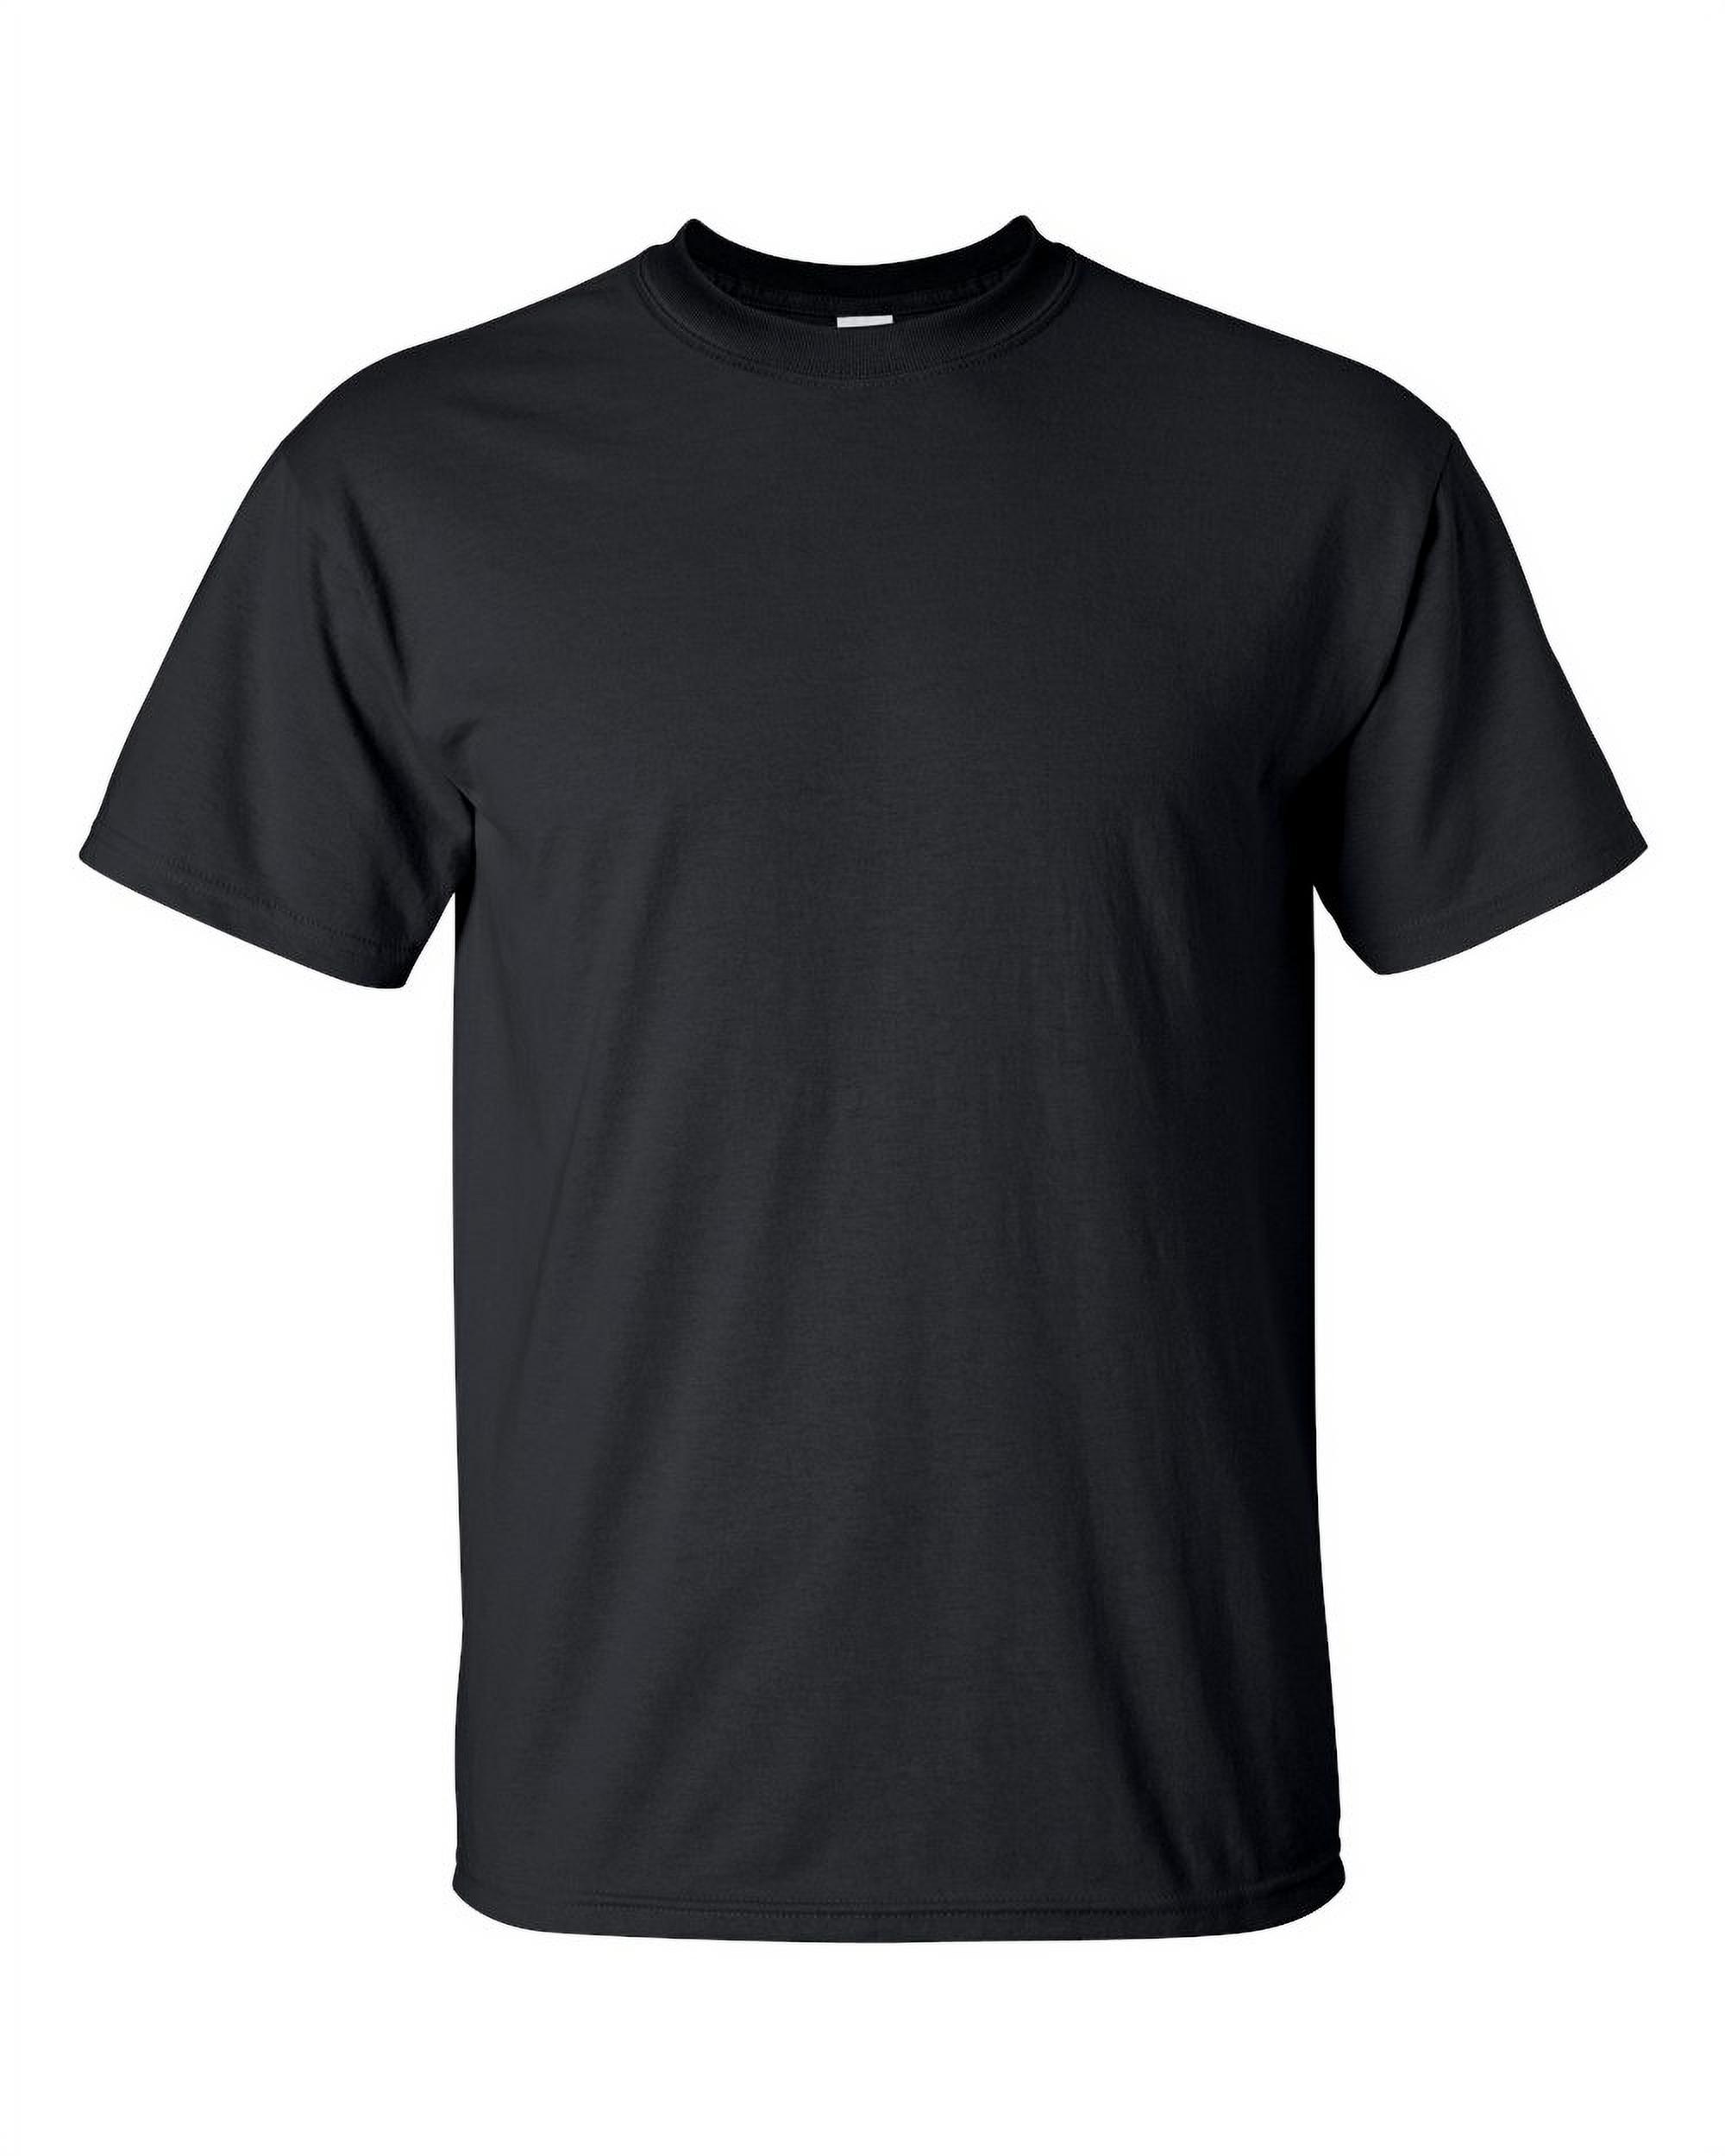 Big Men's T-Shirt - Dallas - image 2 of 5